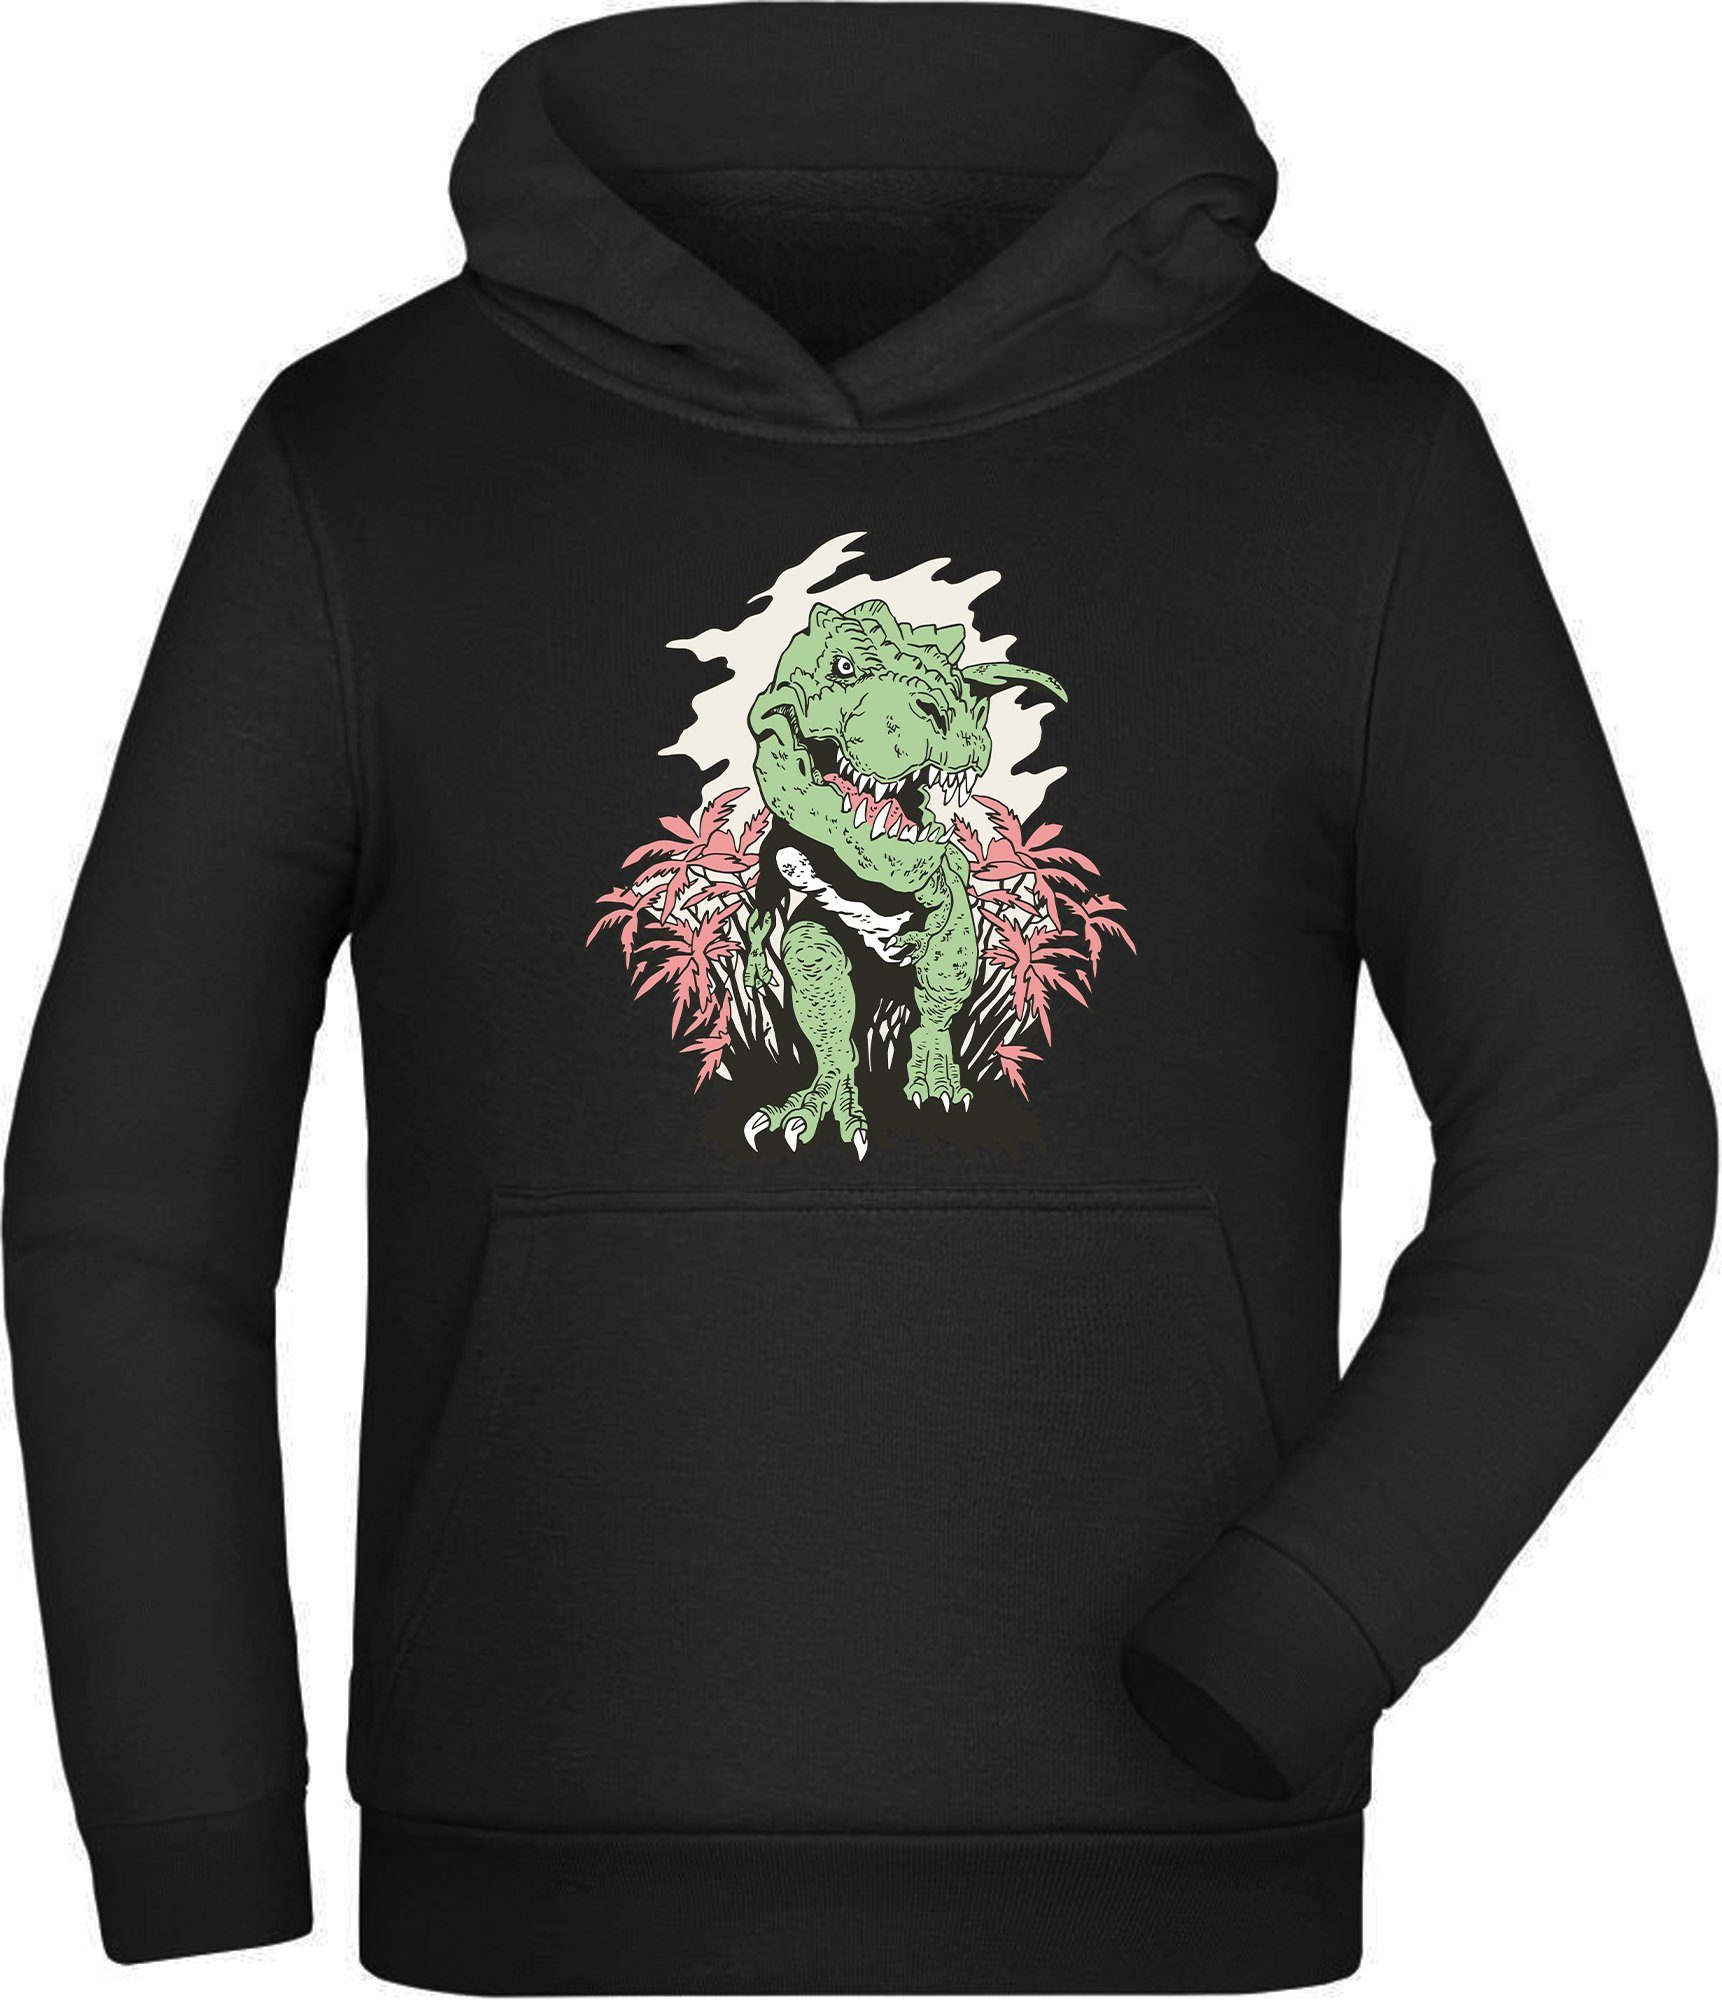 MyDesign24 Hoodie Kinder Kapuzen Sweatshirt - T-Rex der aus einem Busch kommt Kapuzensweater mit Aufdruck, i101